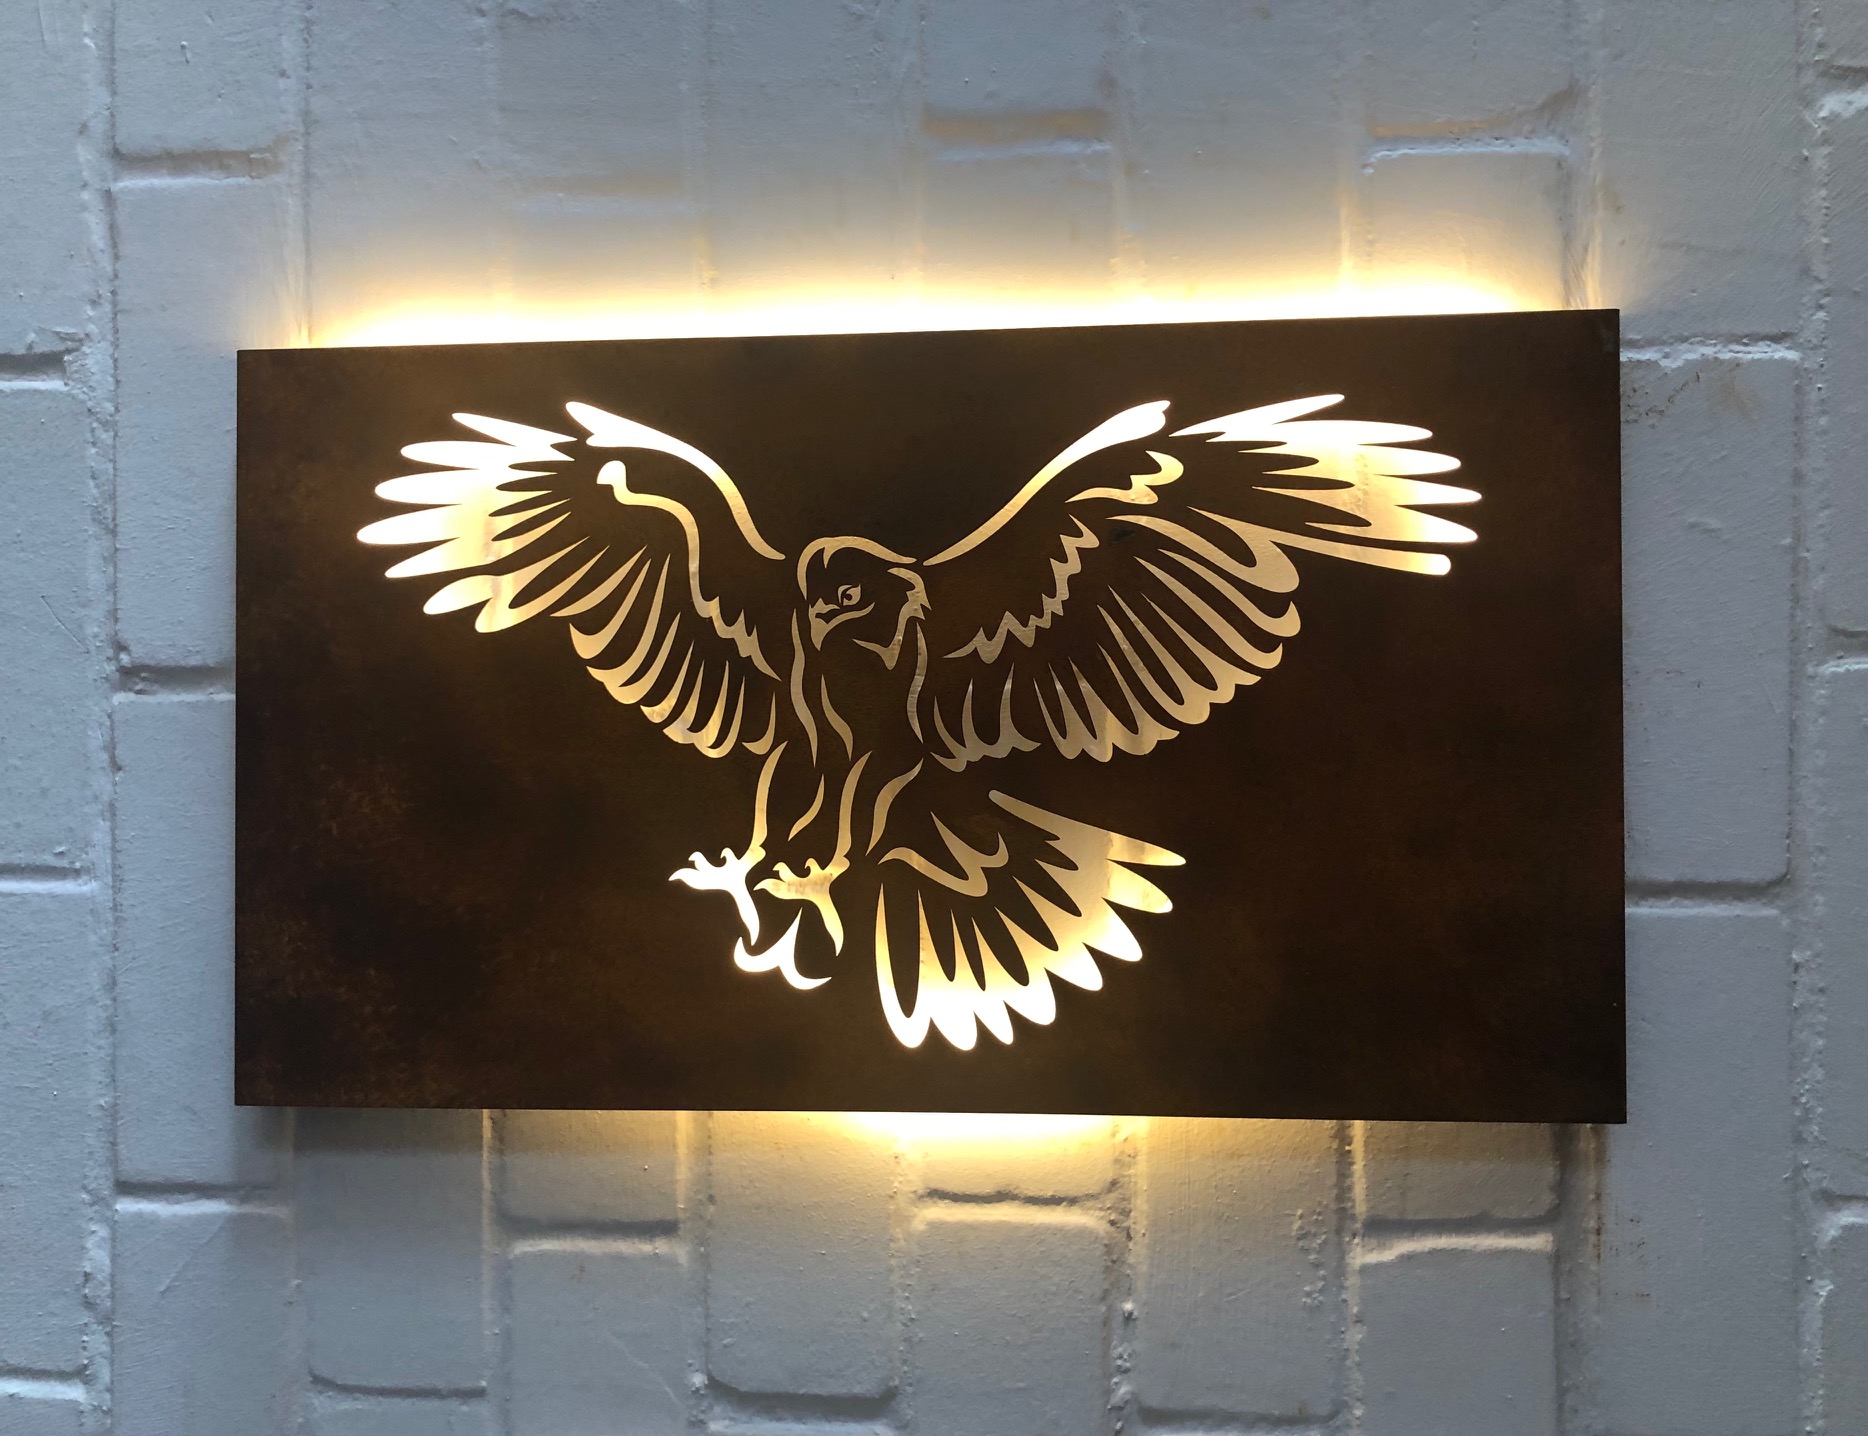 Wandbild (Lampe) Motiv Adler (ohne Beleuchtung) Wandbild 1000x600 mm Edelstahl (rostet nicht)